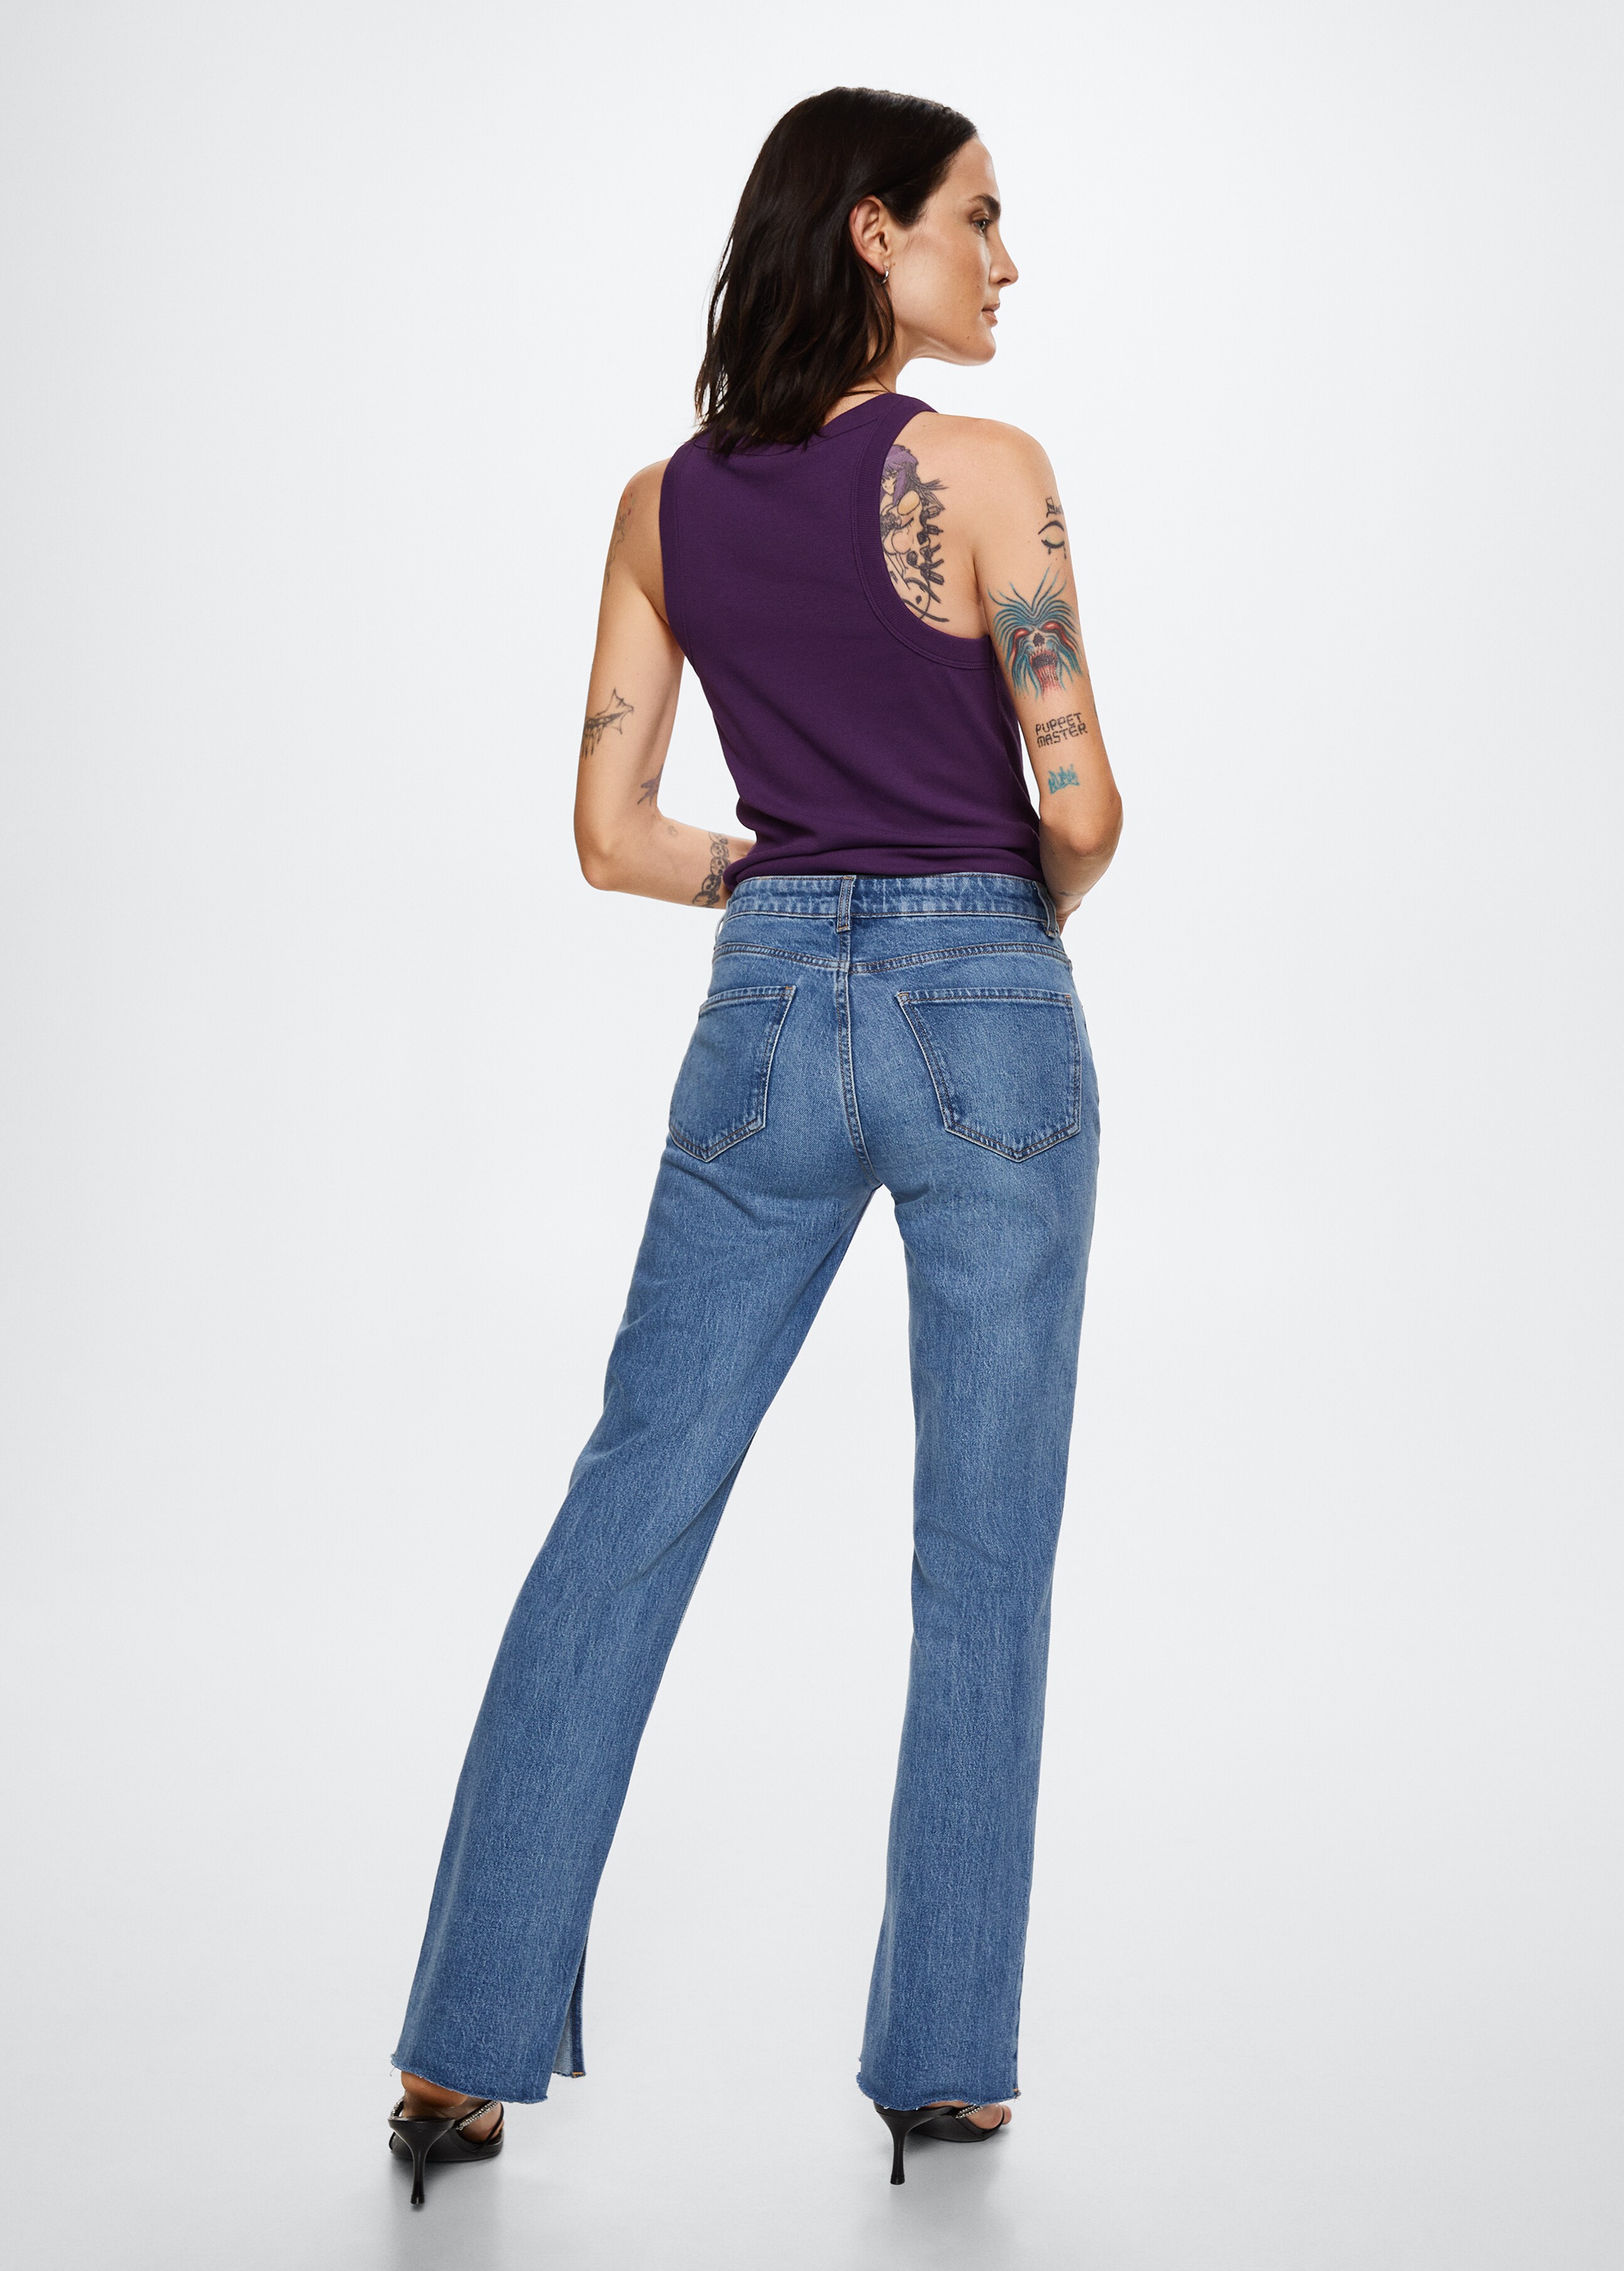 Gerade Jeans mit Seitenschlitz - Rückseite des Artikels